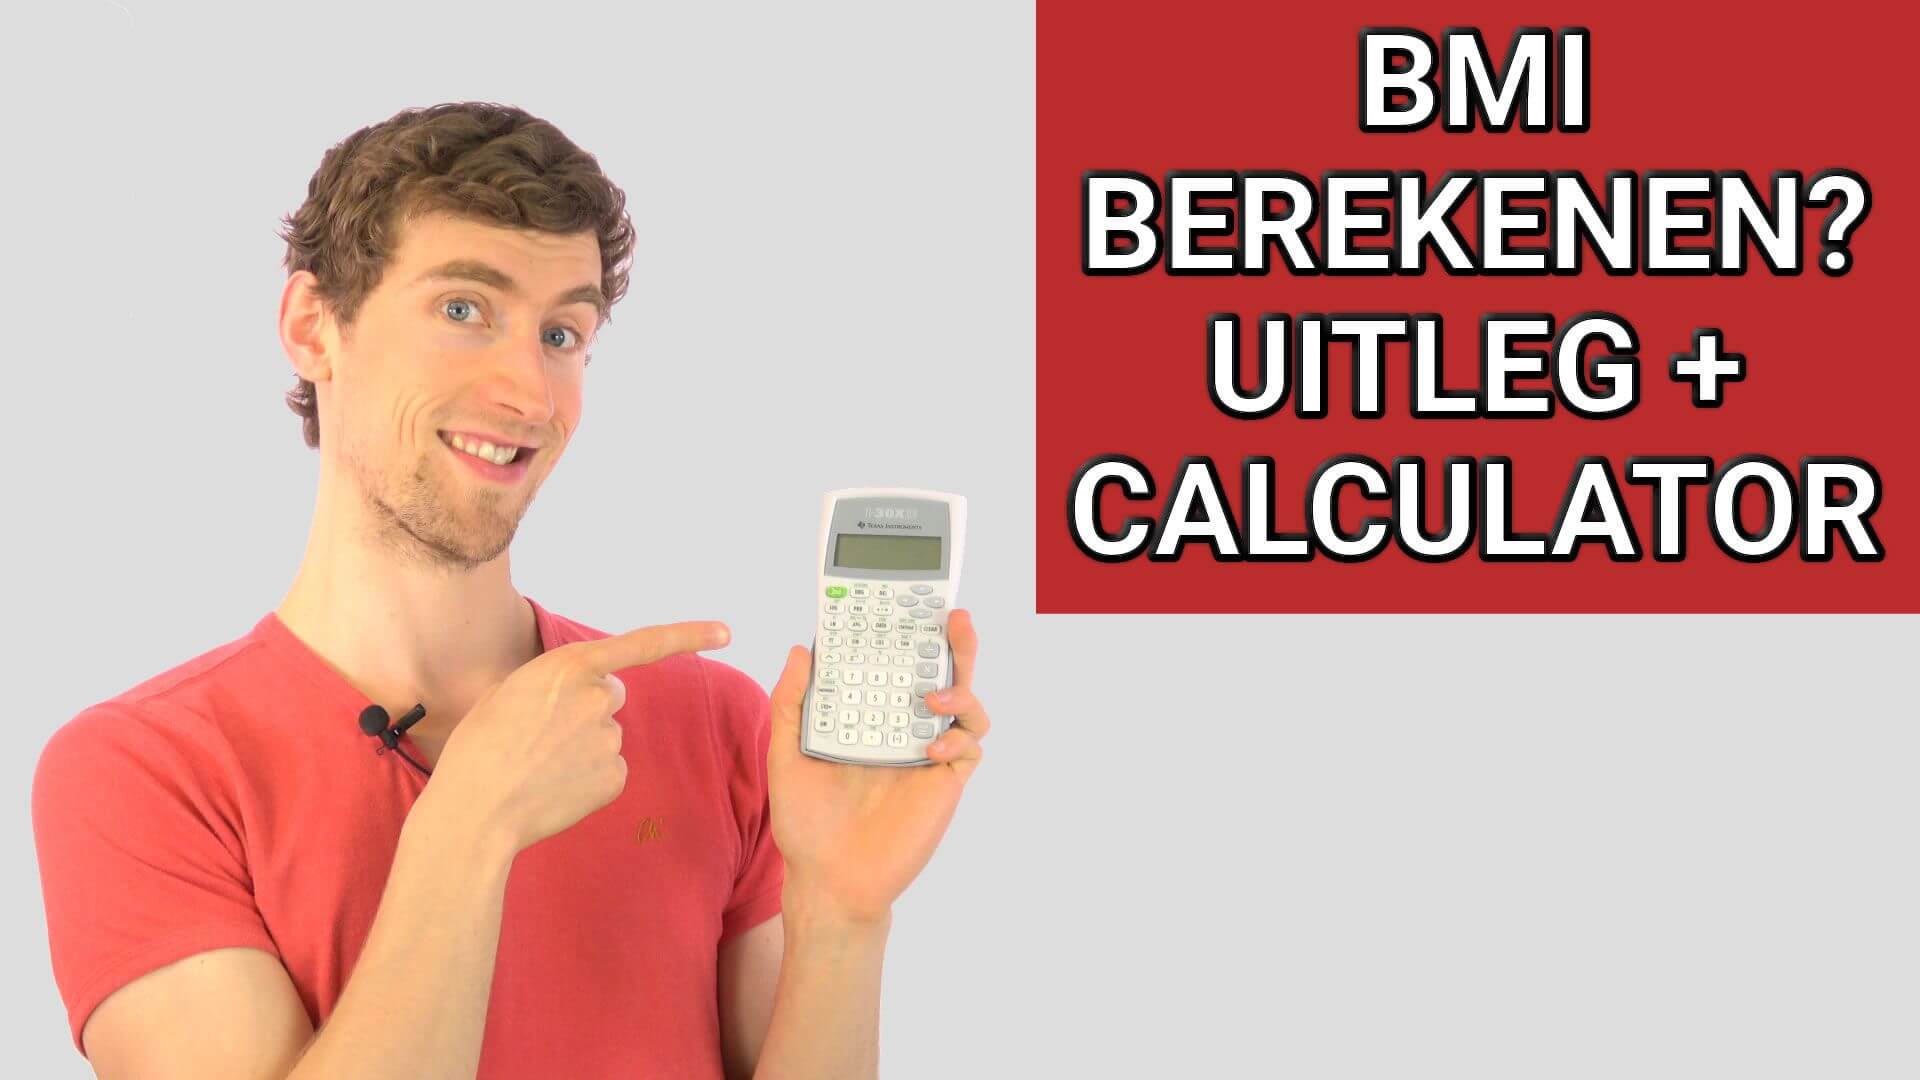 BMI Berekenen + Ideale Gewicht: Calculator voor Man, Vrouw en Kind